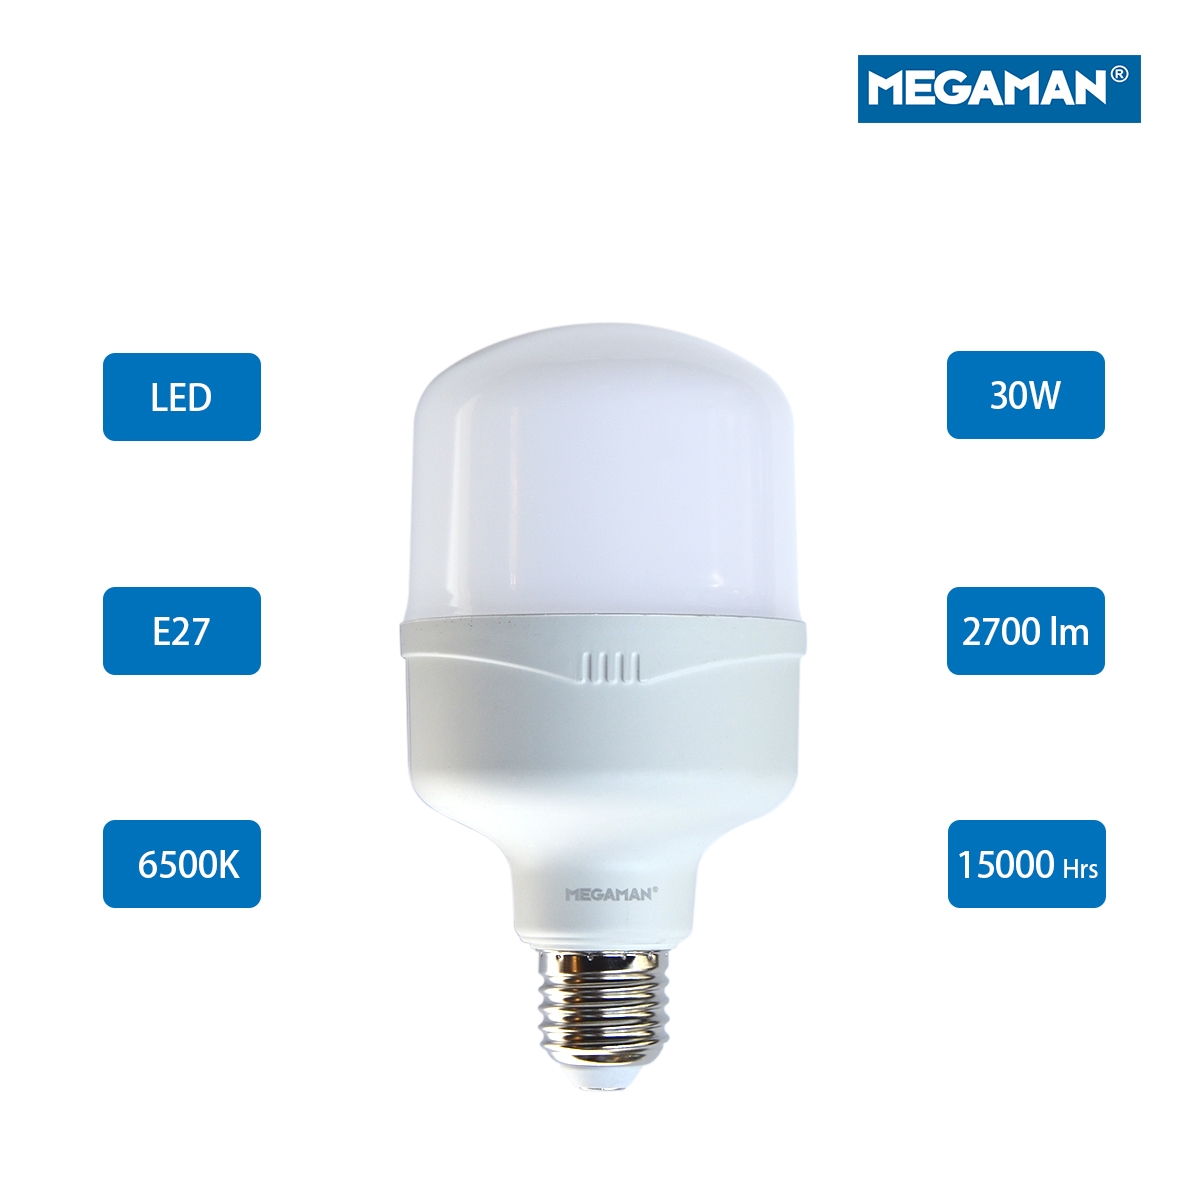 Megaman LED Classic Bulb E27  30W 6500K -Day Light